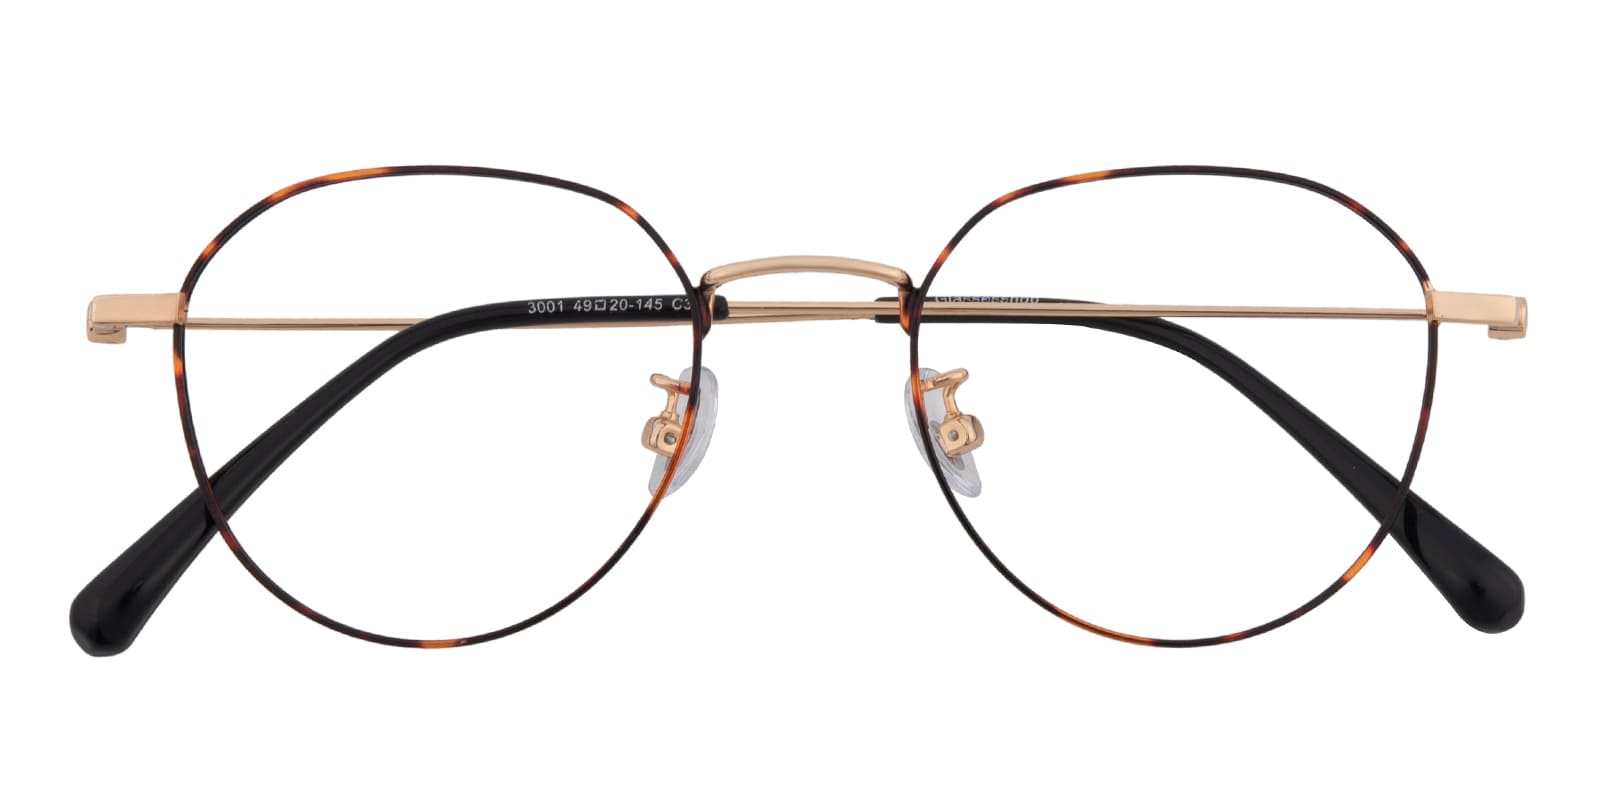 Oval Eyeglasses, Full Frame Tortoise/Golden Metal - FM1821